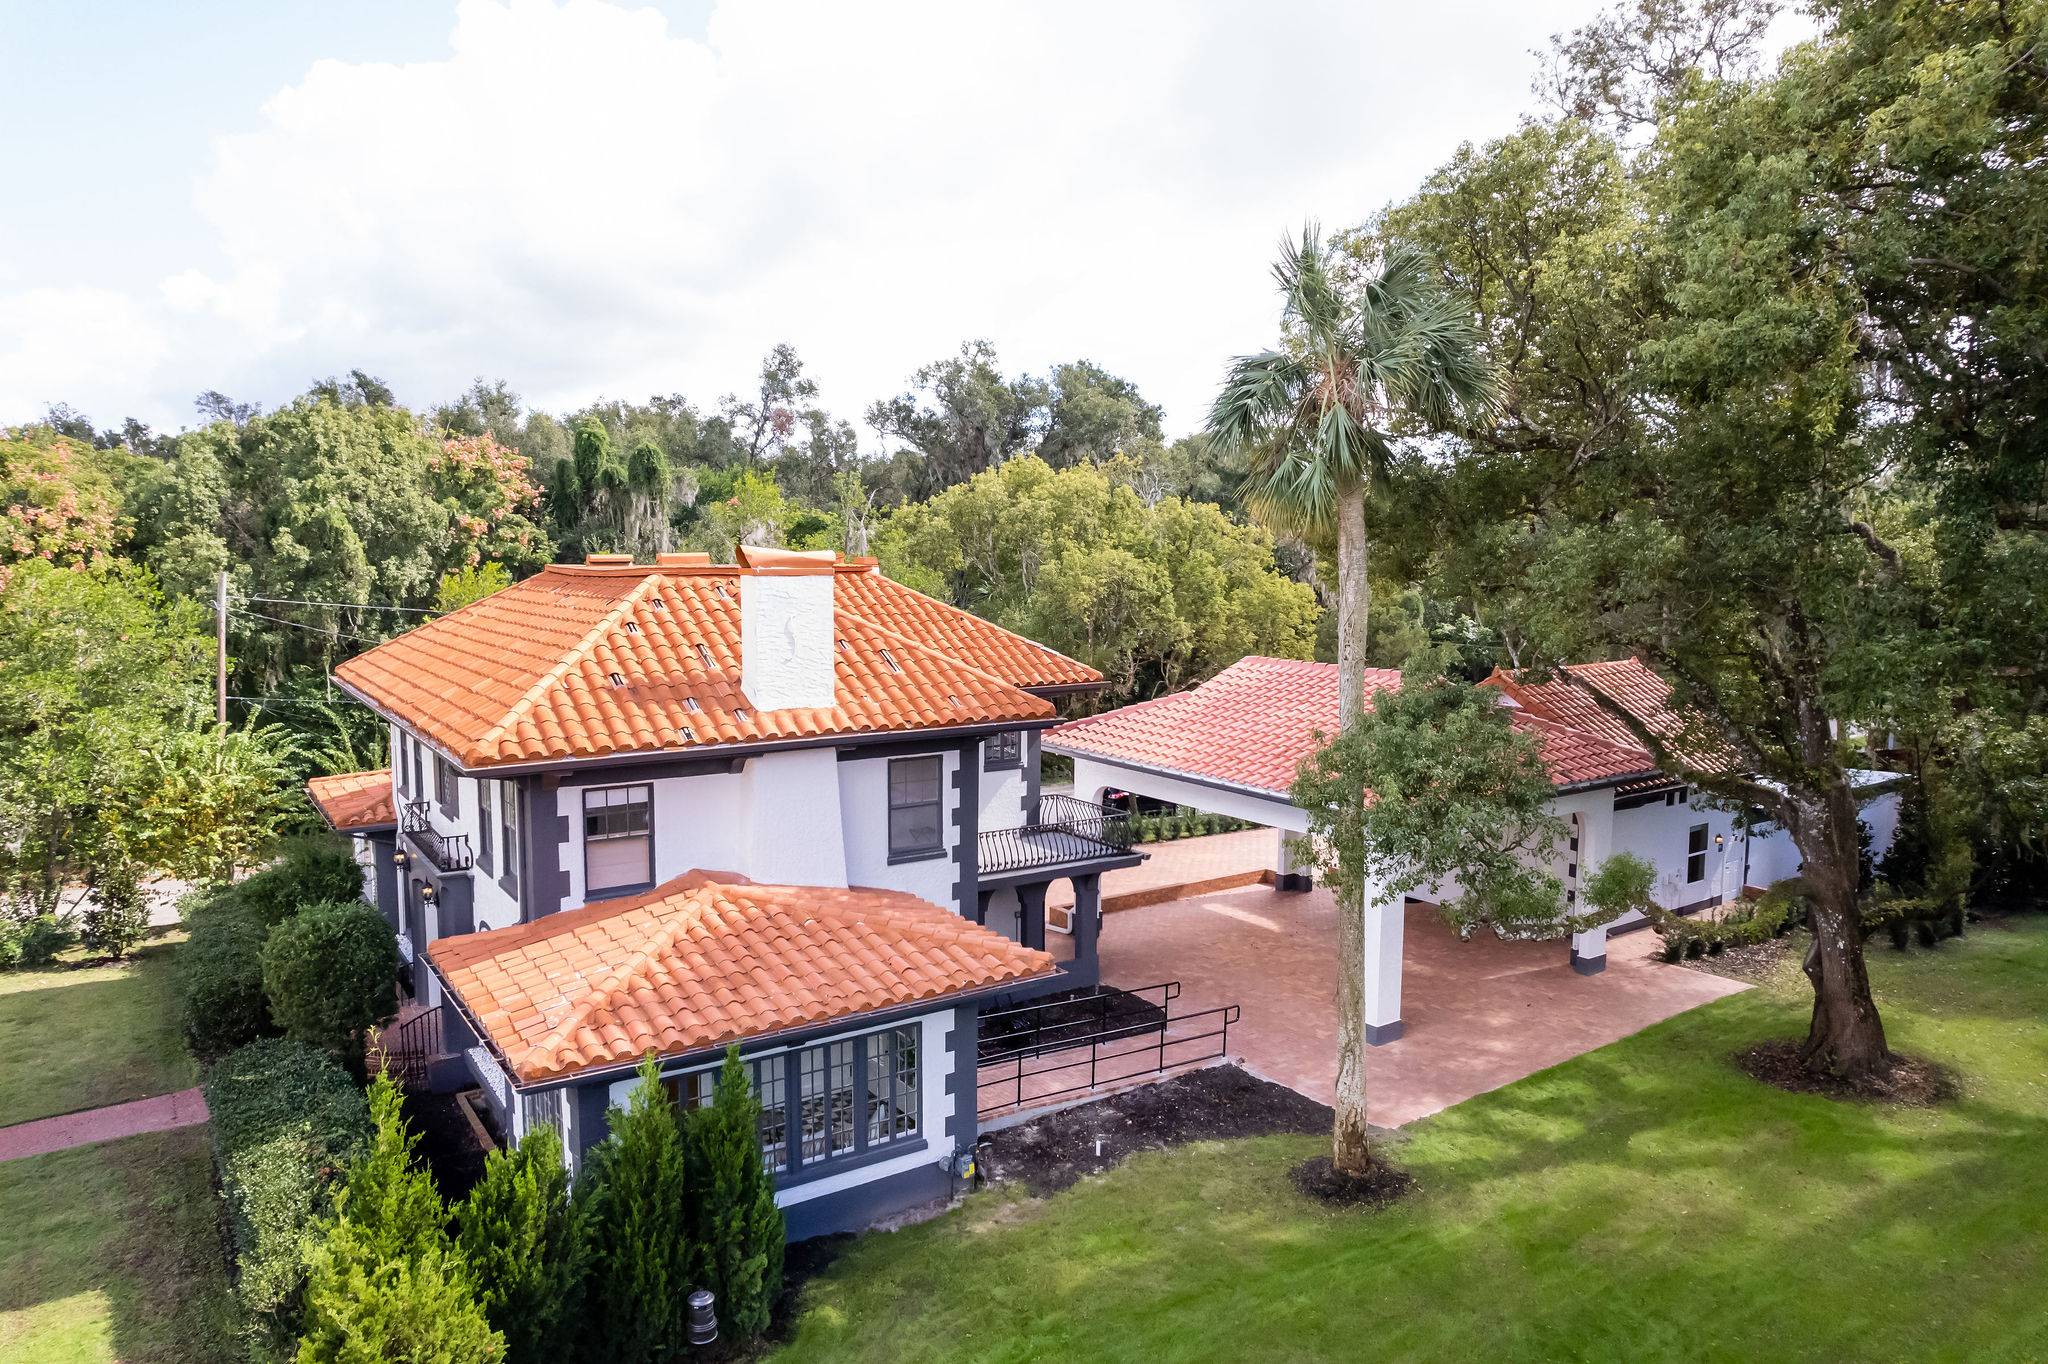 Villa Festa Aerial View of outdoor pavilion area - Central Florida's Historic Indoor & Outdoor Wedding Venue